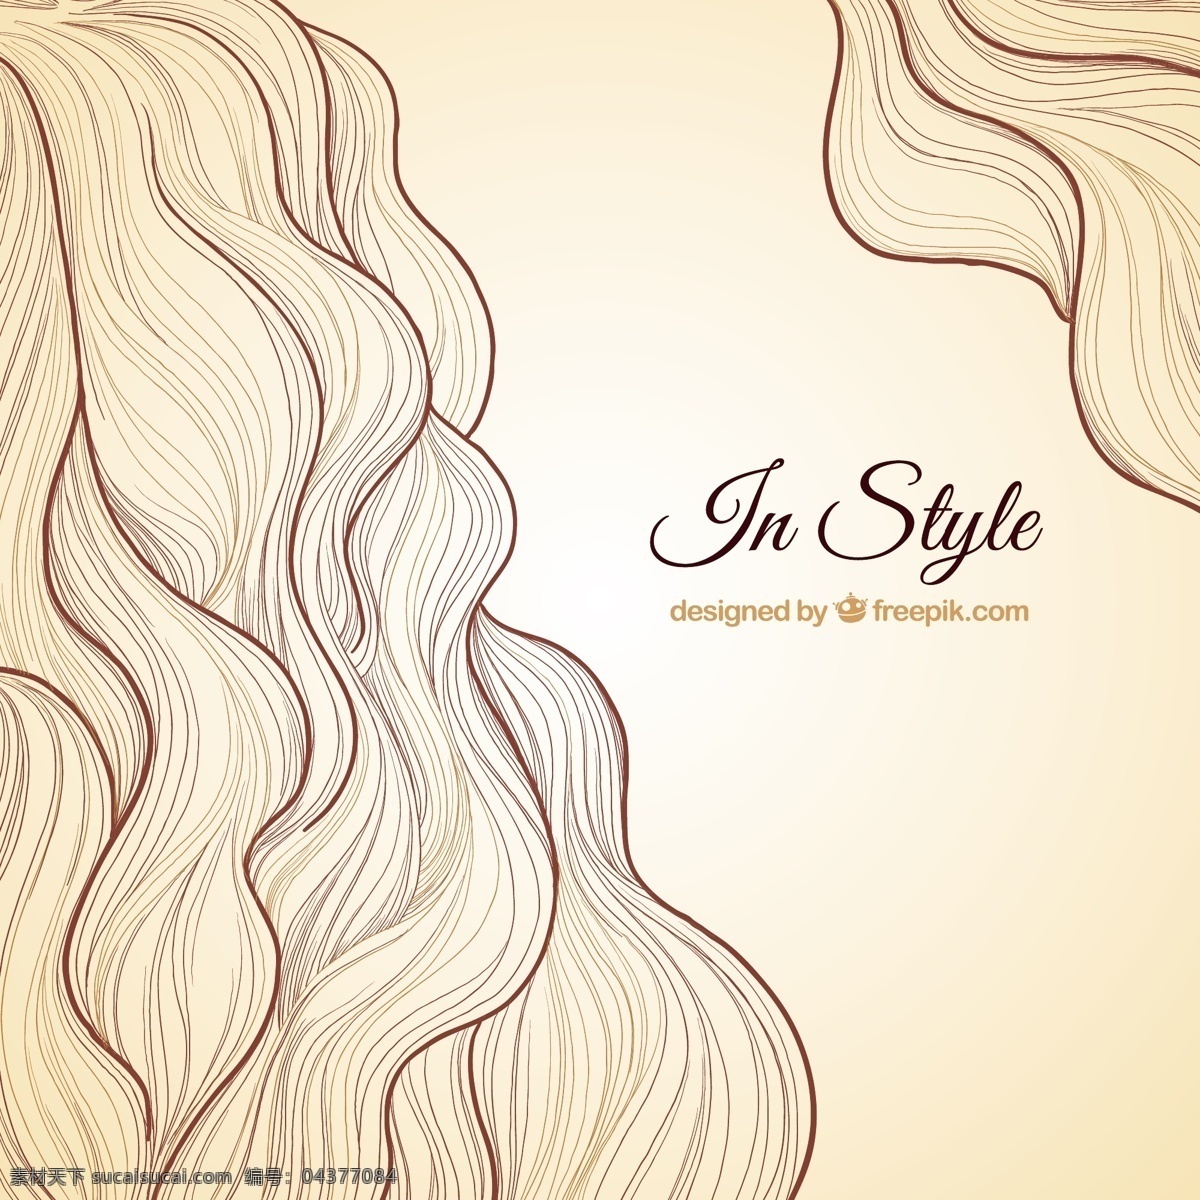 美容美发背景 背景 美发 美容 绘制 海浪 沙龙 插图 理发 头发 发型 棕色 取材 波浪 手绘